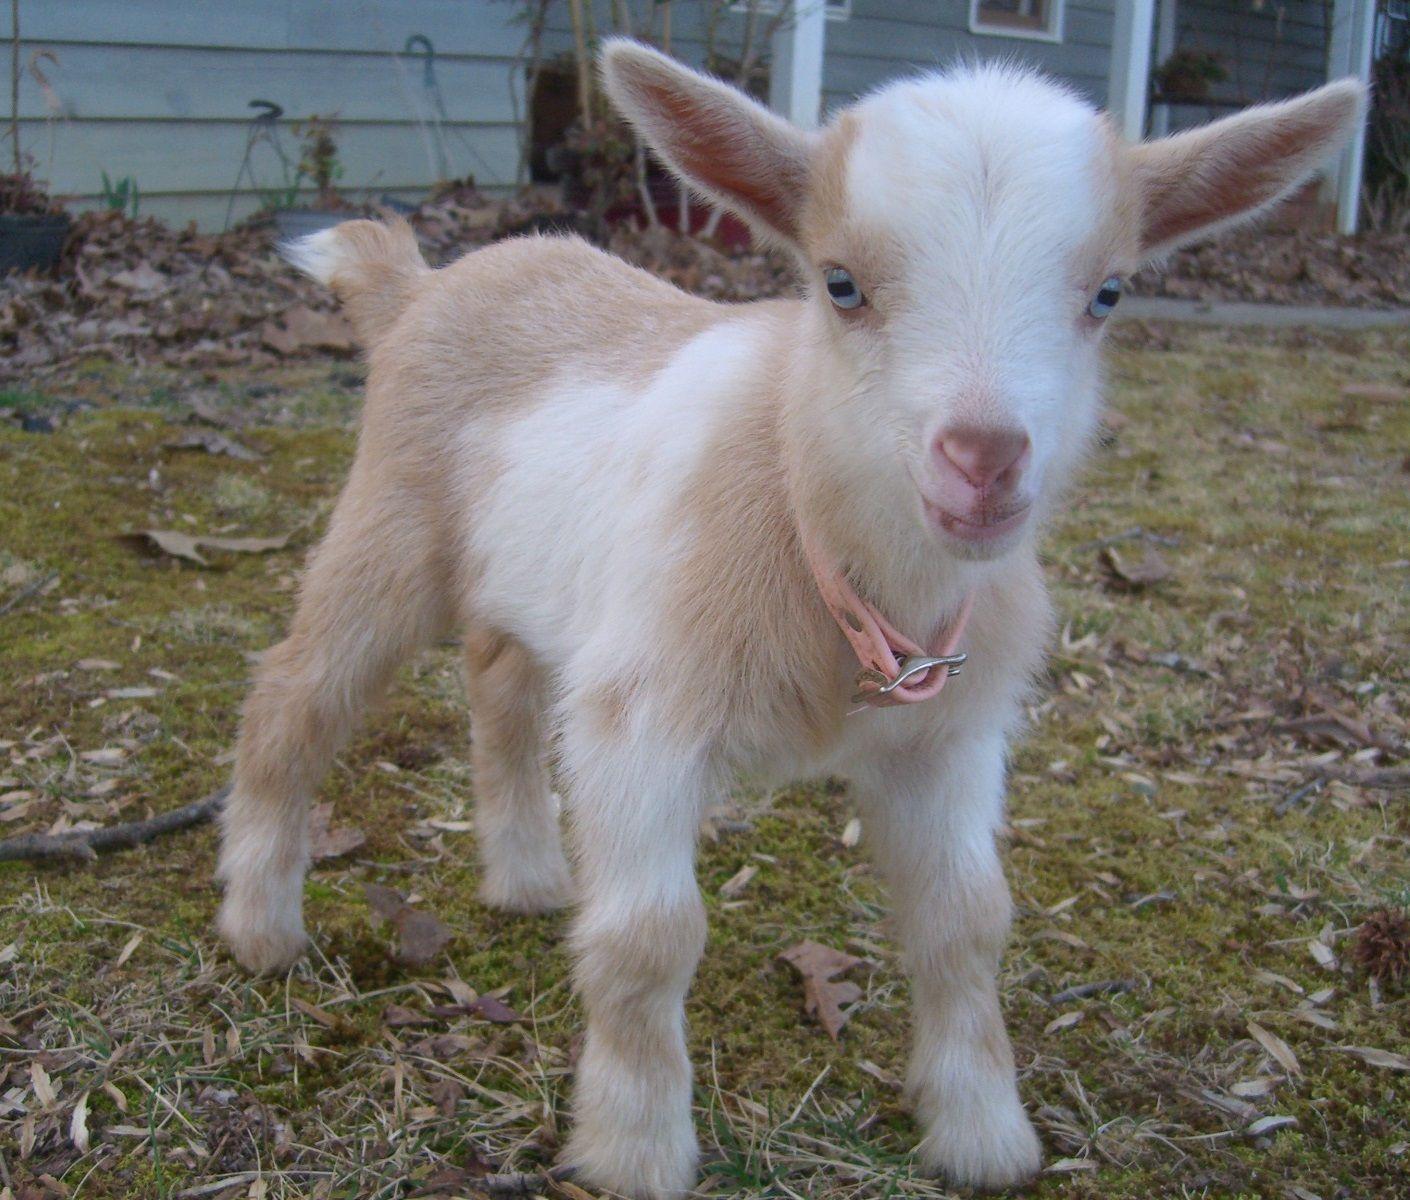 Baby Goat Image